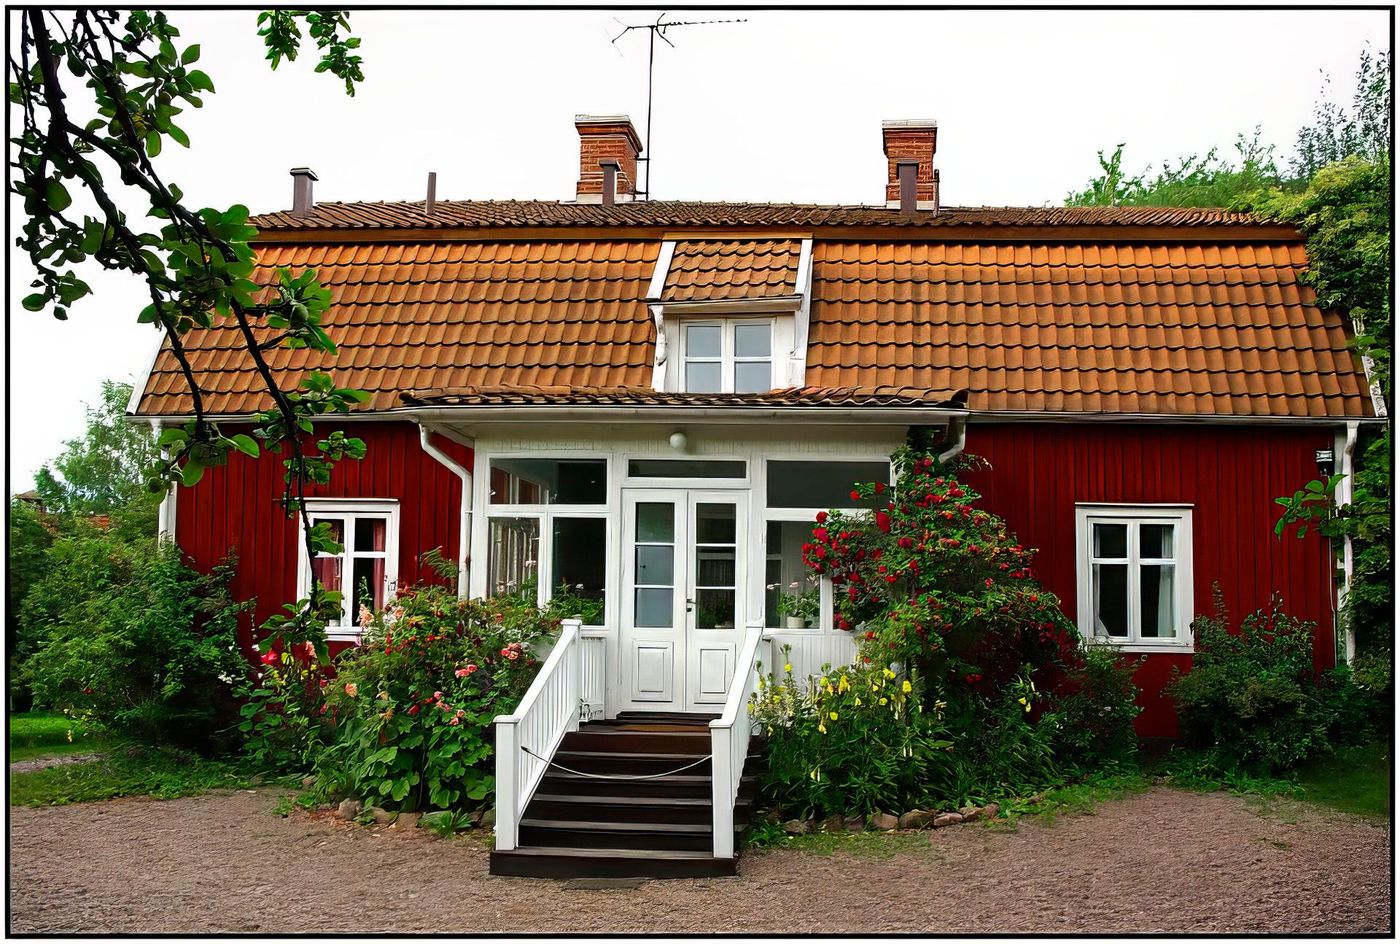 La maison d'Astrid Lindgren